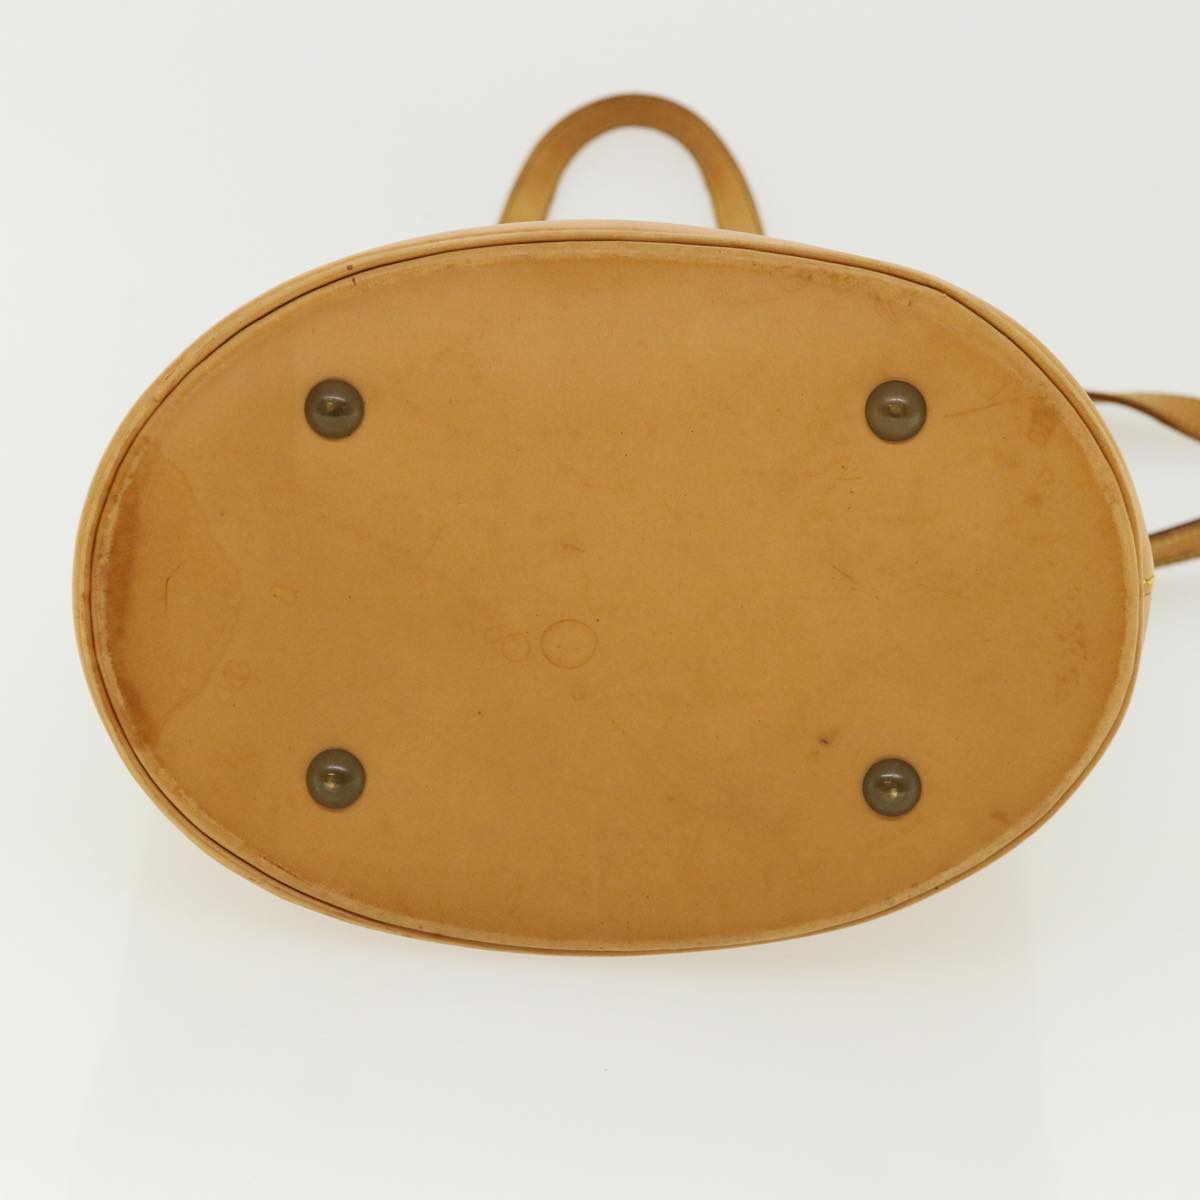 LOUIS VUITTON Nomad Leather Bucket PM Shoulder Bag Beige M85001 LV Auth 36170